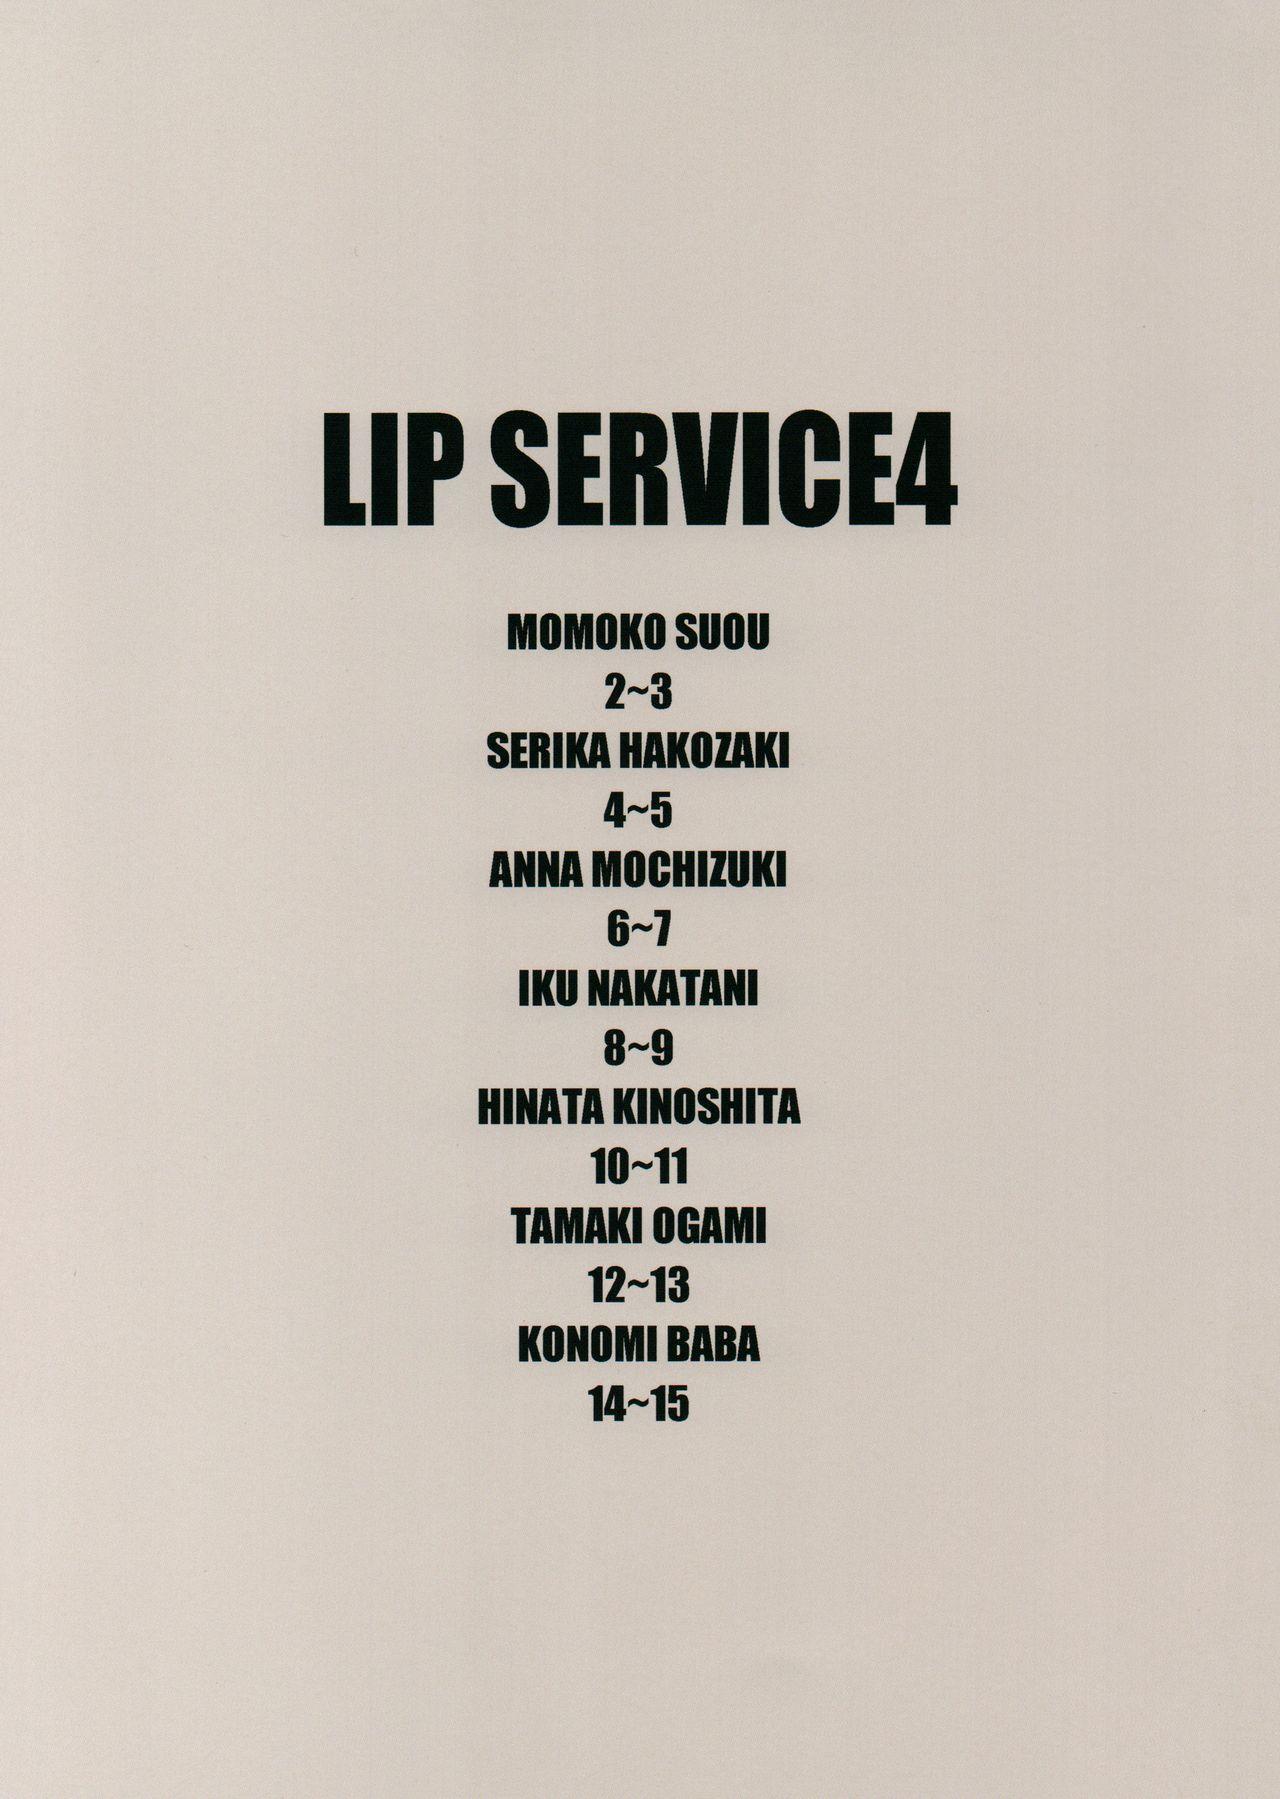 LIP SERVICE 4 2